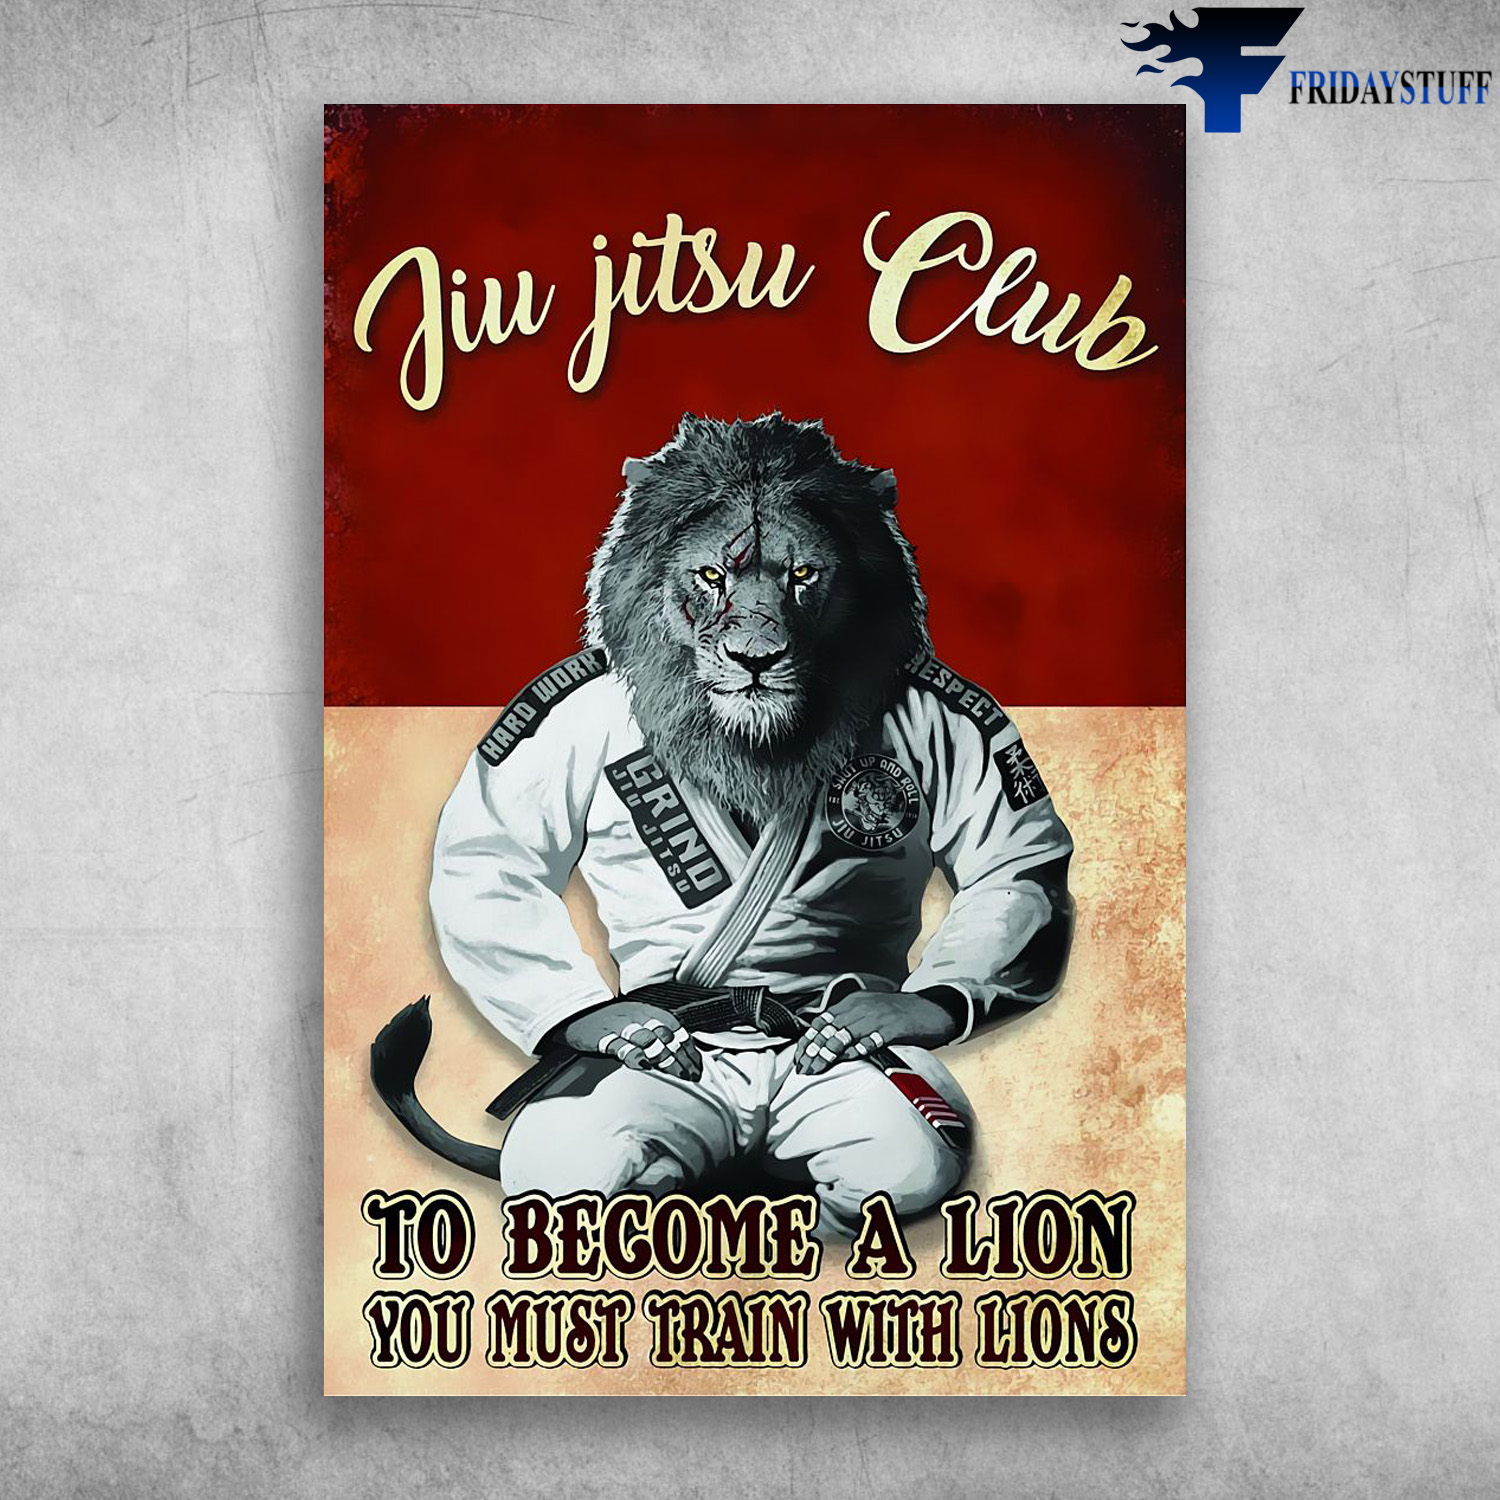 Lion Jiu Jitsu Club - To Become A Lion, You Must Train Lions